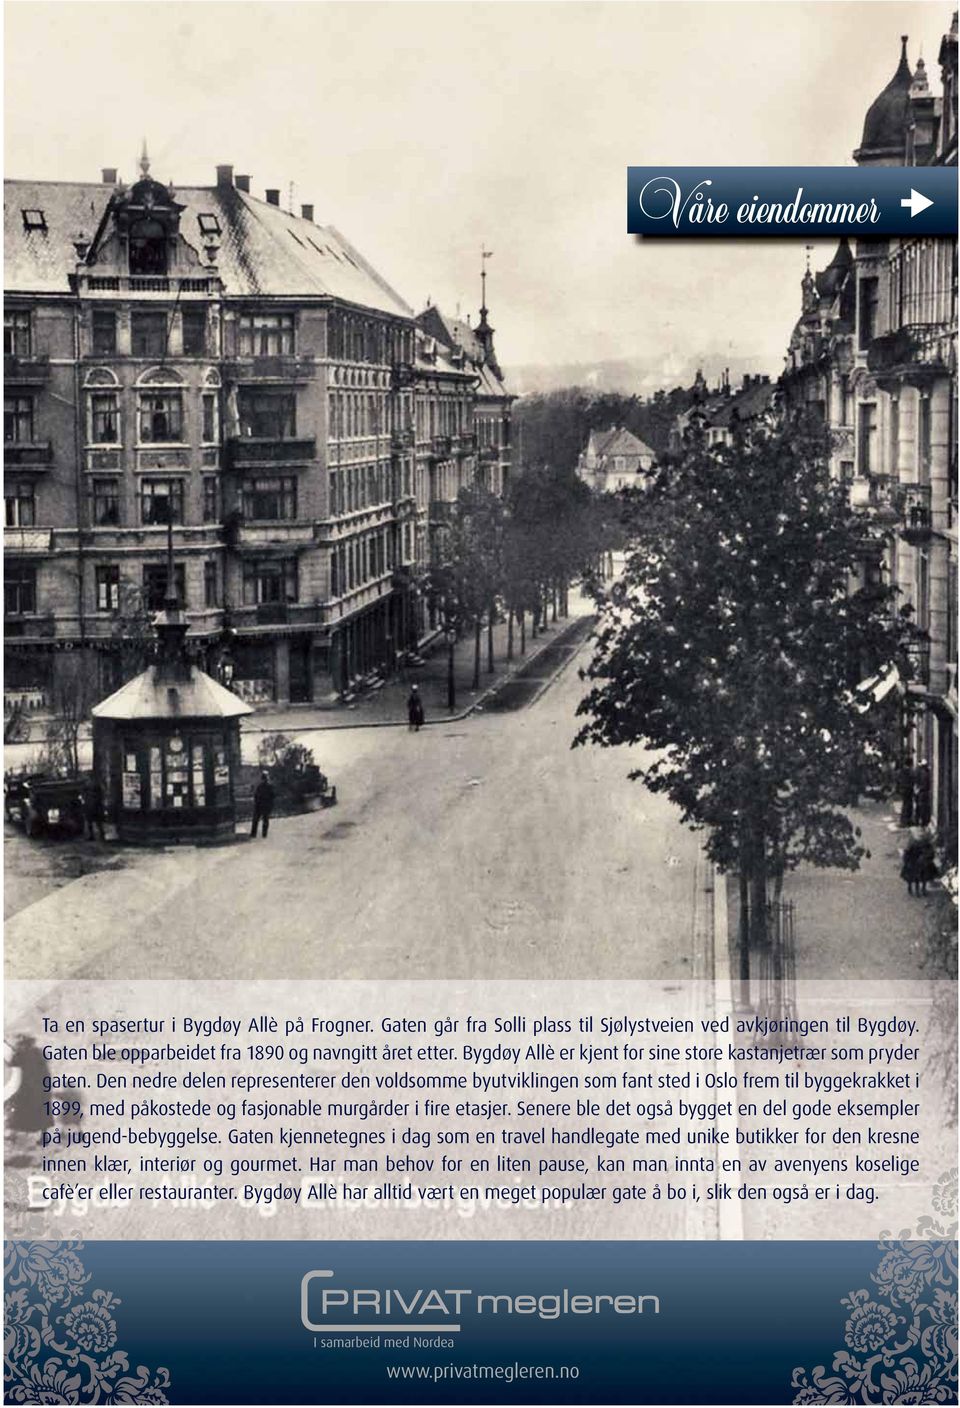 Den nedre delen representerer den voldsomme byutviklingen som fant sted i Oslo frem til byggekrakket i 1899, med påkostede og fasjonable murgårder i fire etasjer.